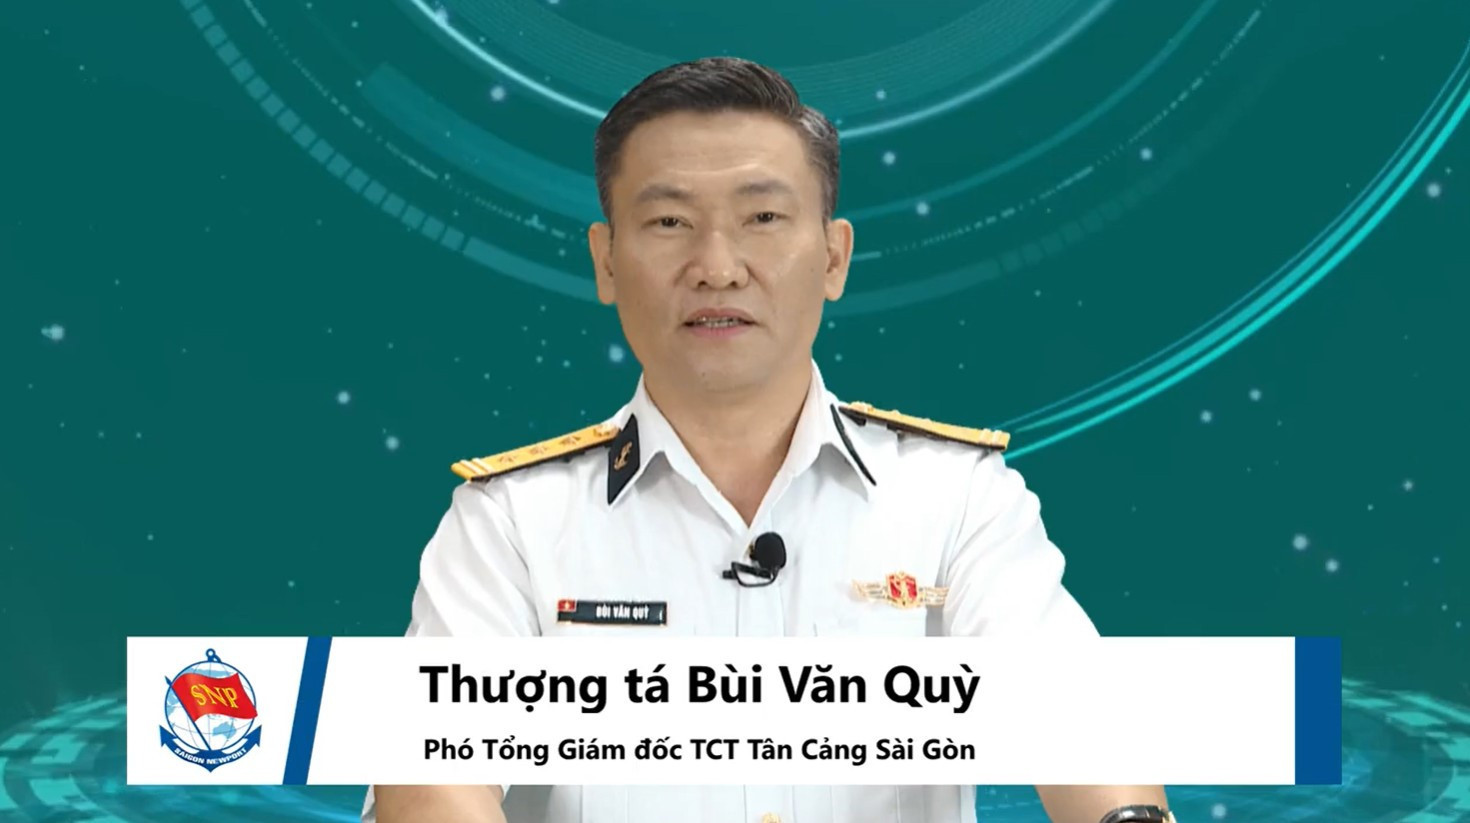 Thượng tá Bùi Văn Quỳ - Phó Tổng Giám đốc TCT Tân Cảng Sài Gòn phát biểu khai mạc sự kiện